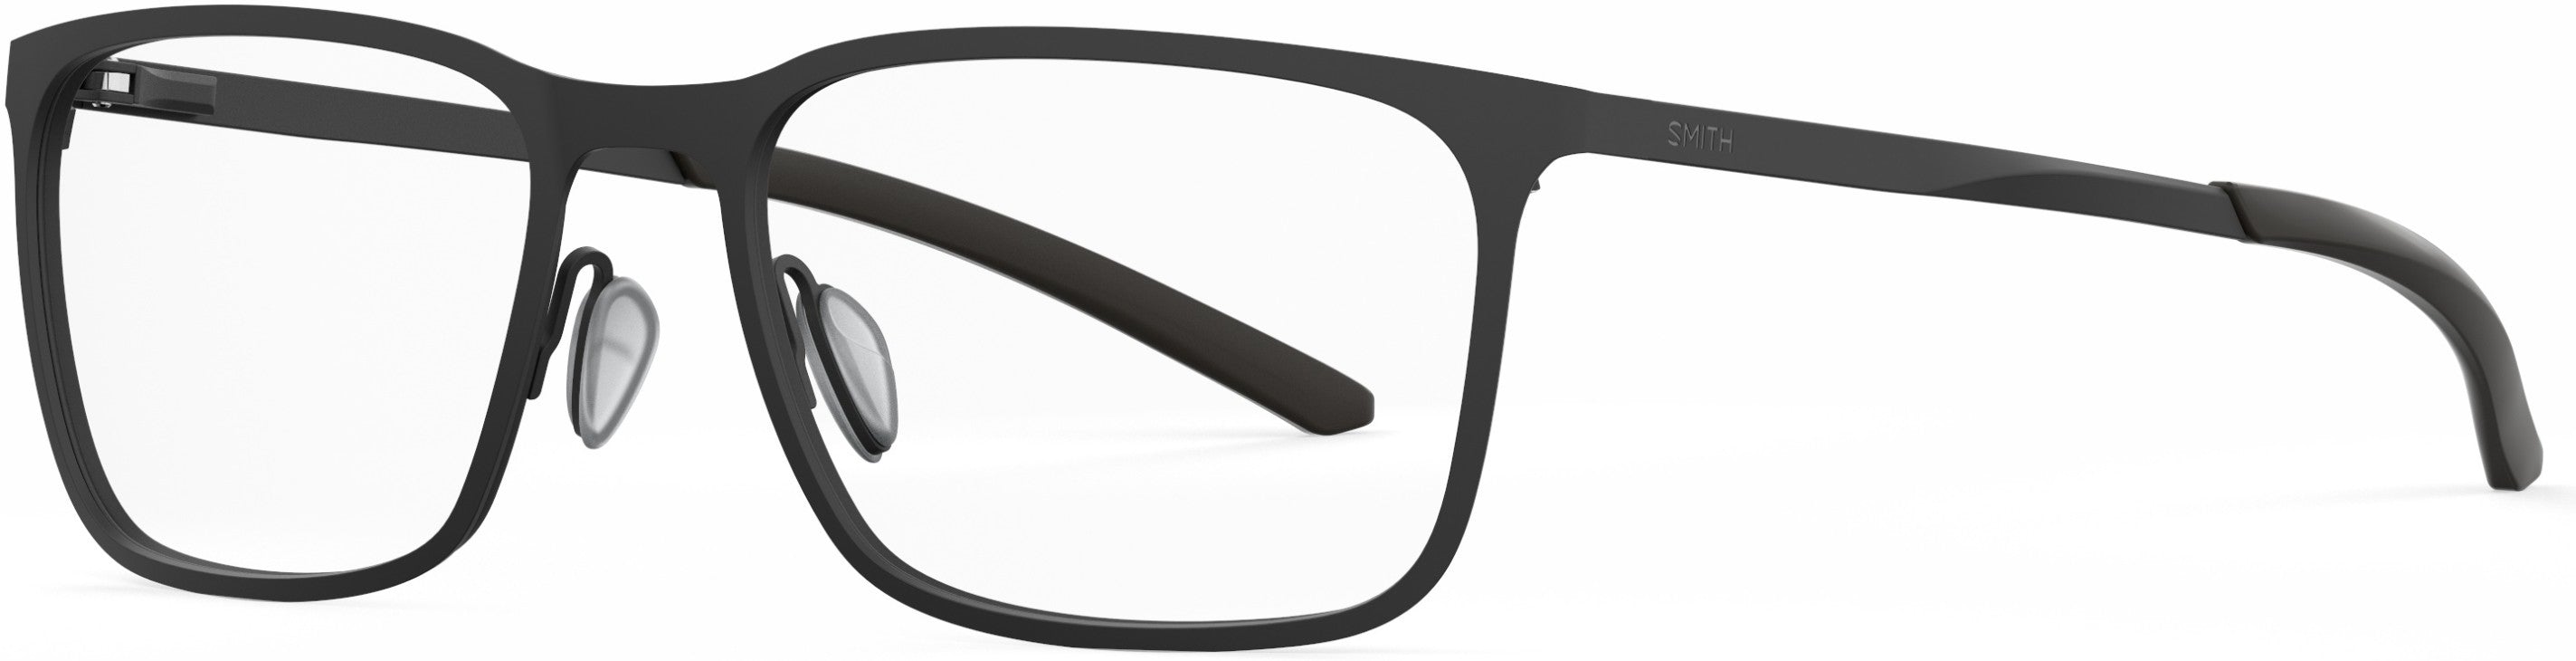 Smith Outsider Metal Rectangular Eyeglasses 0003-0003  Matte Black (00 Demo Lens)